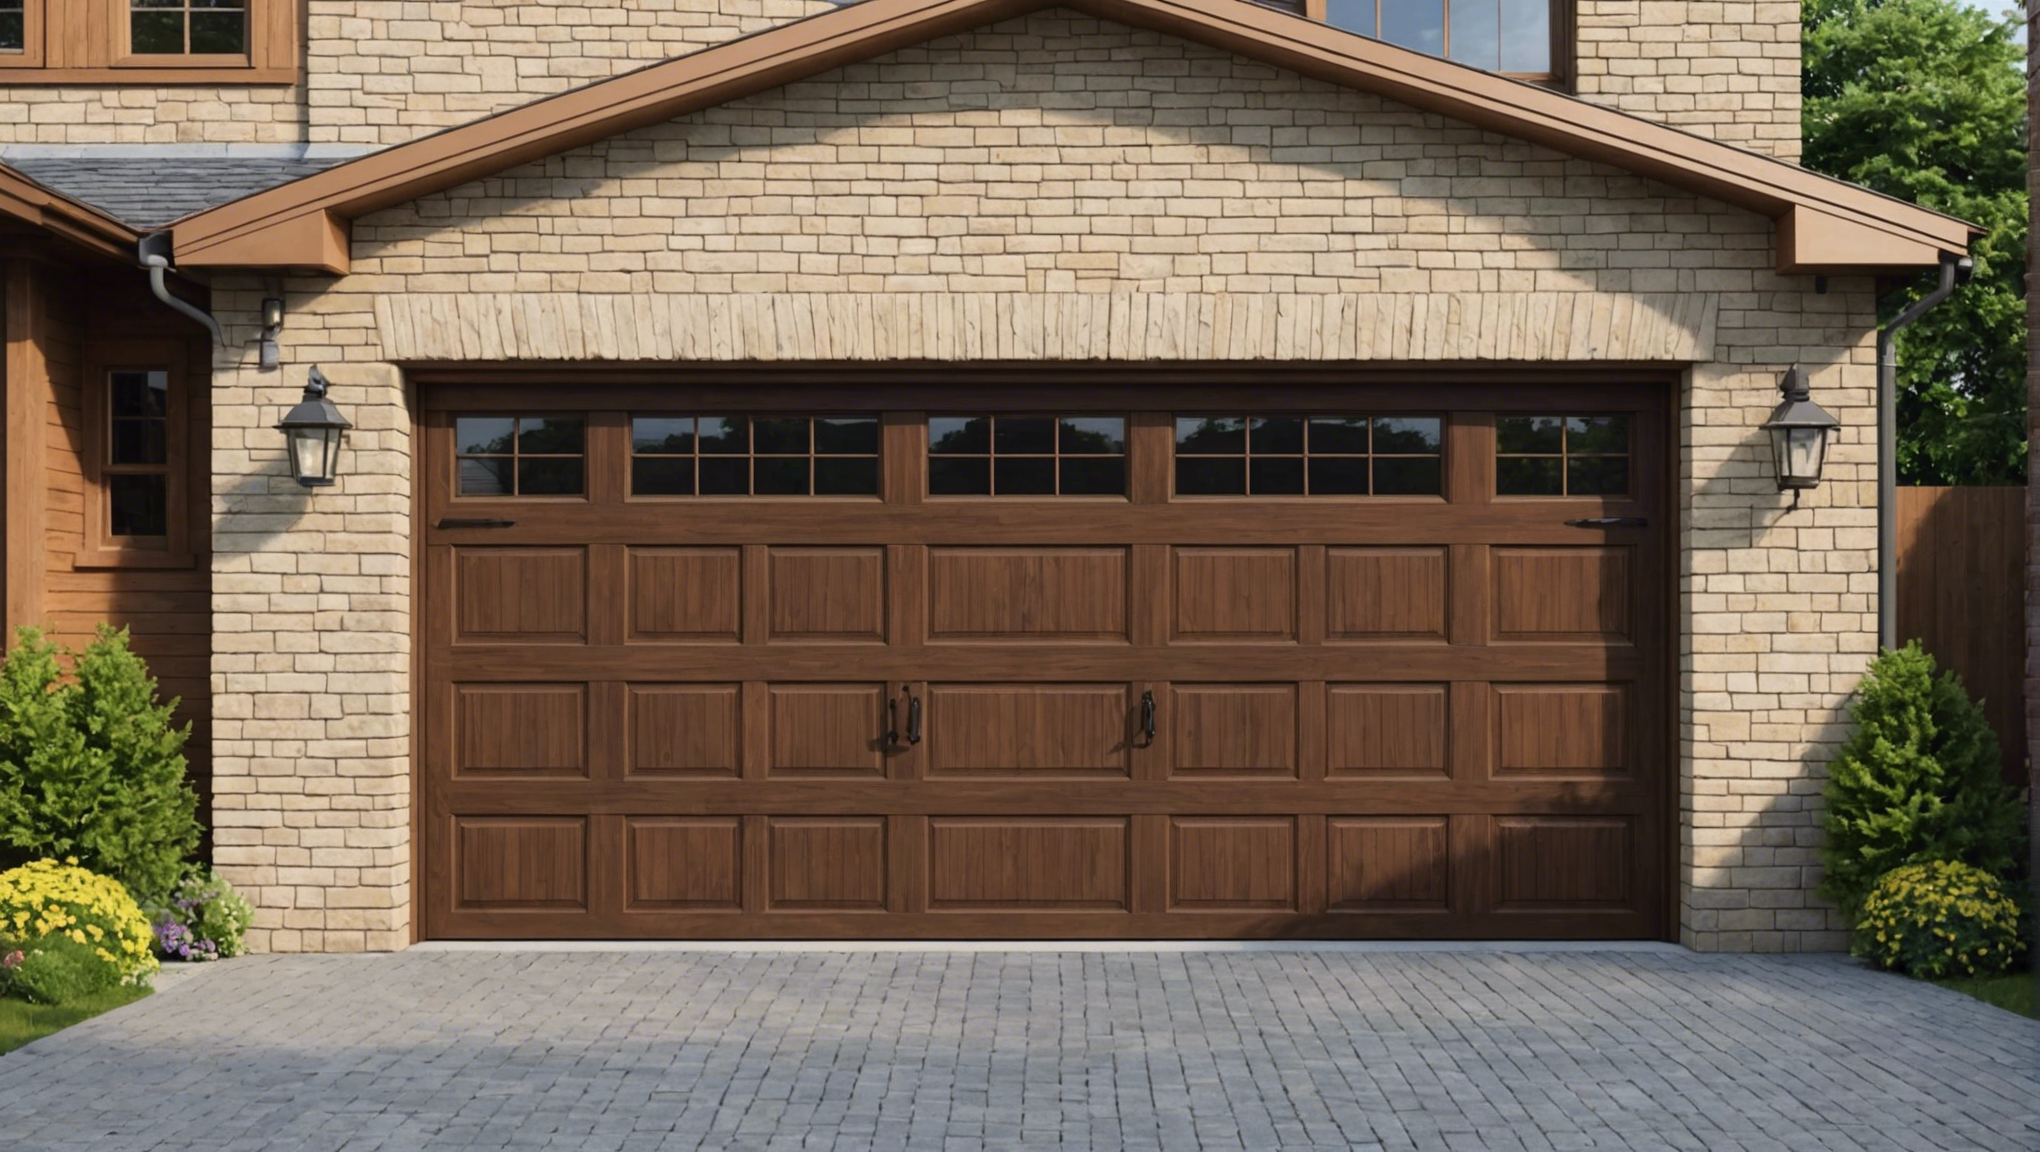 découvrez nos conseils pour choisir la meilleure porte de garage pour votre maison. des options de matériaux aux fonctionnalités, trouvez la porte idéale qui répond à vos besoins.